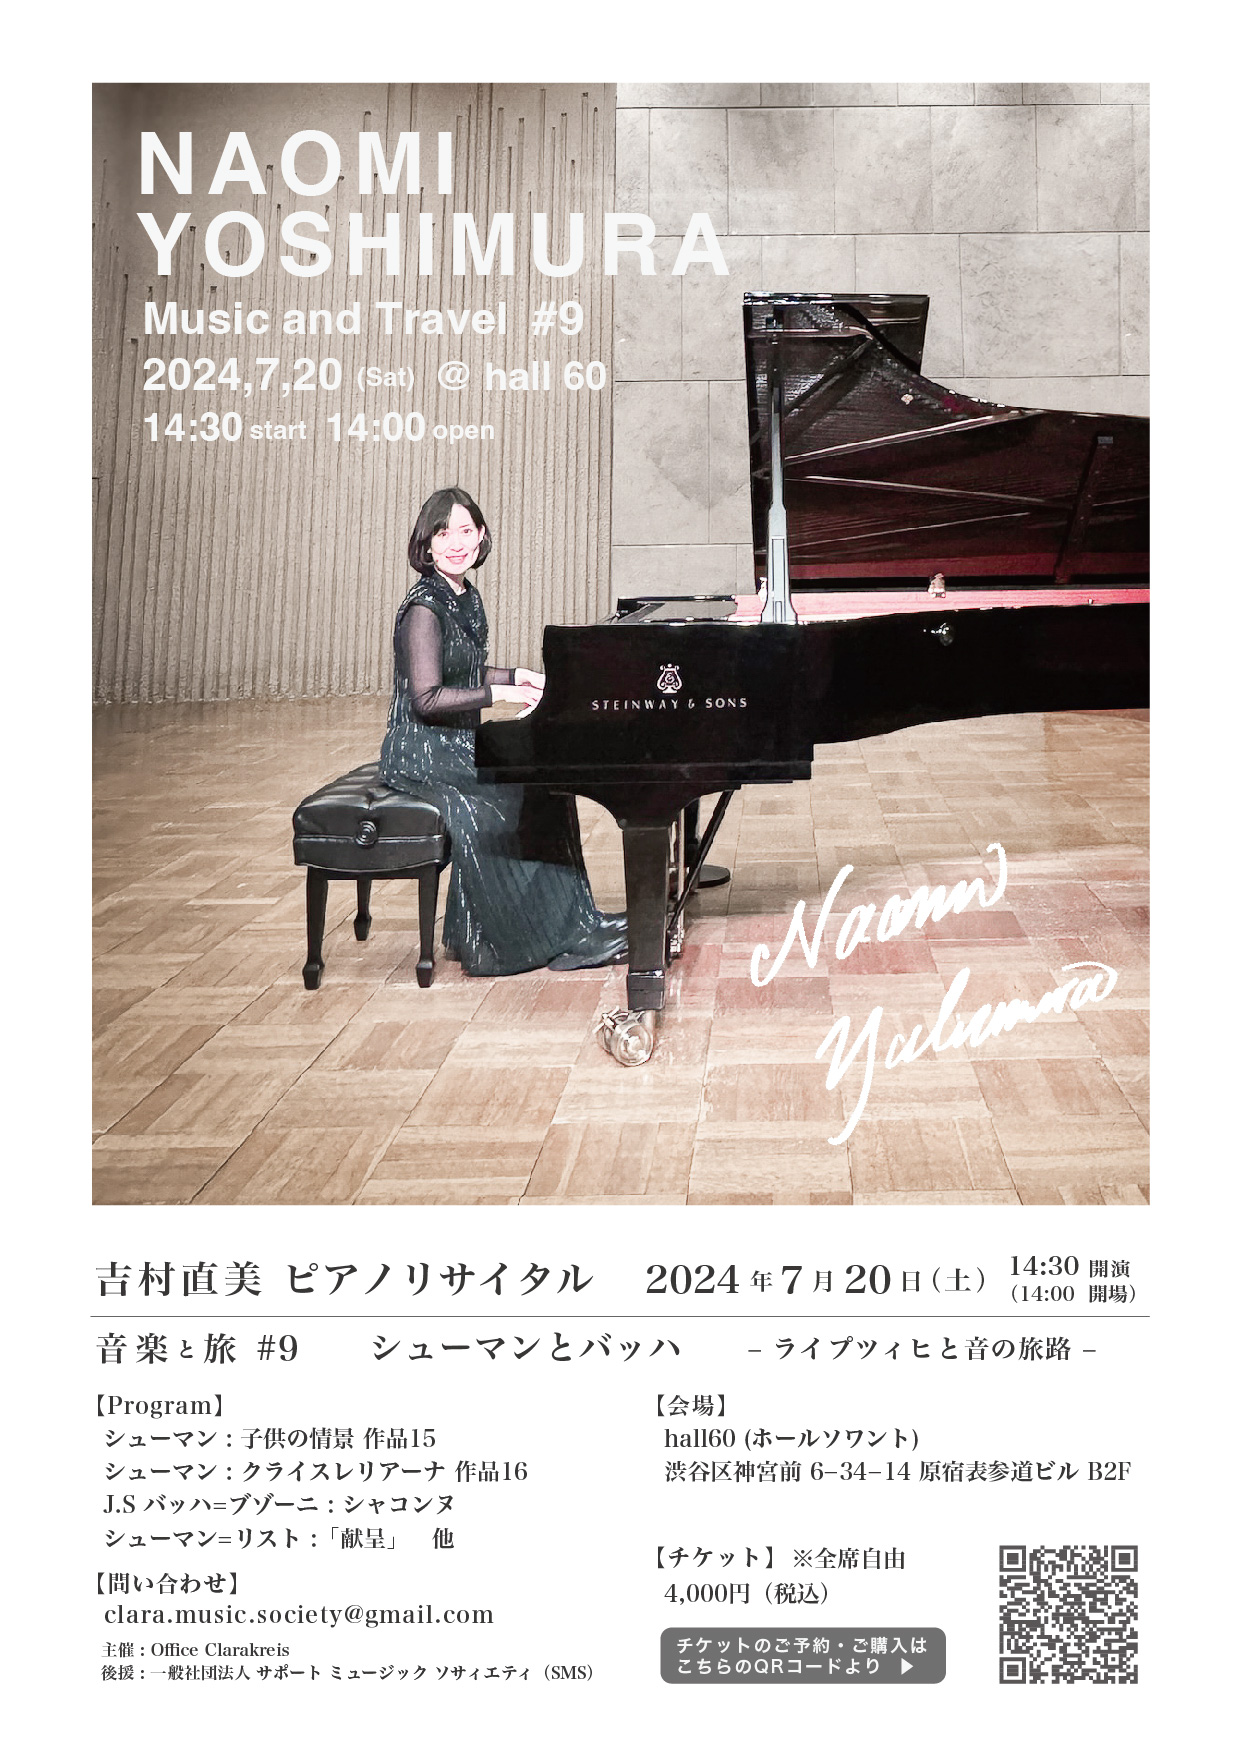 吉村直美ピアノリサイタル 音楽と旅#9 シューマンとバッハ ―ライプツィヒと音の旅路―